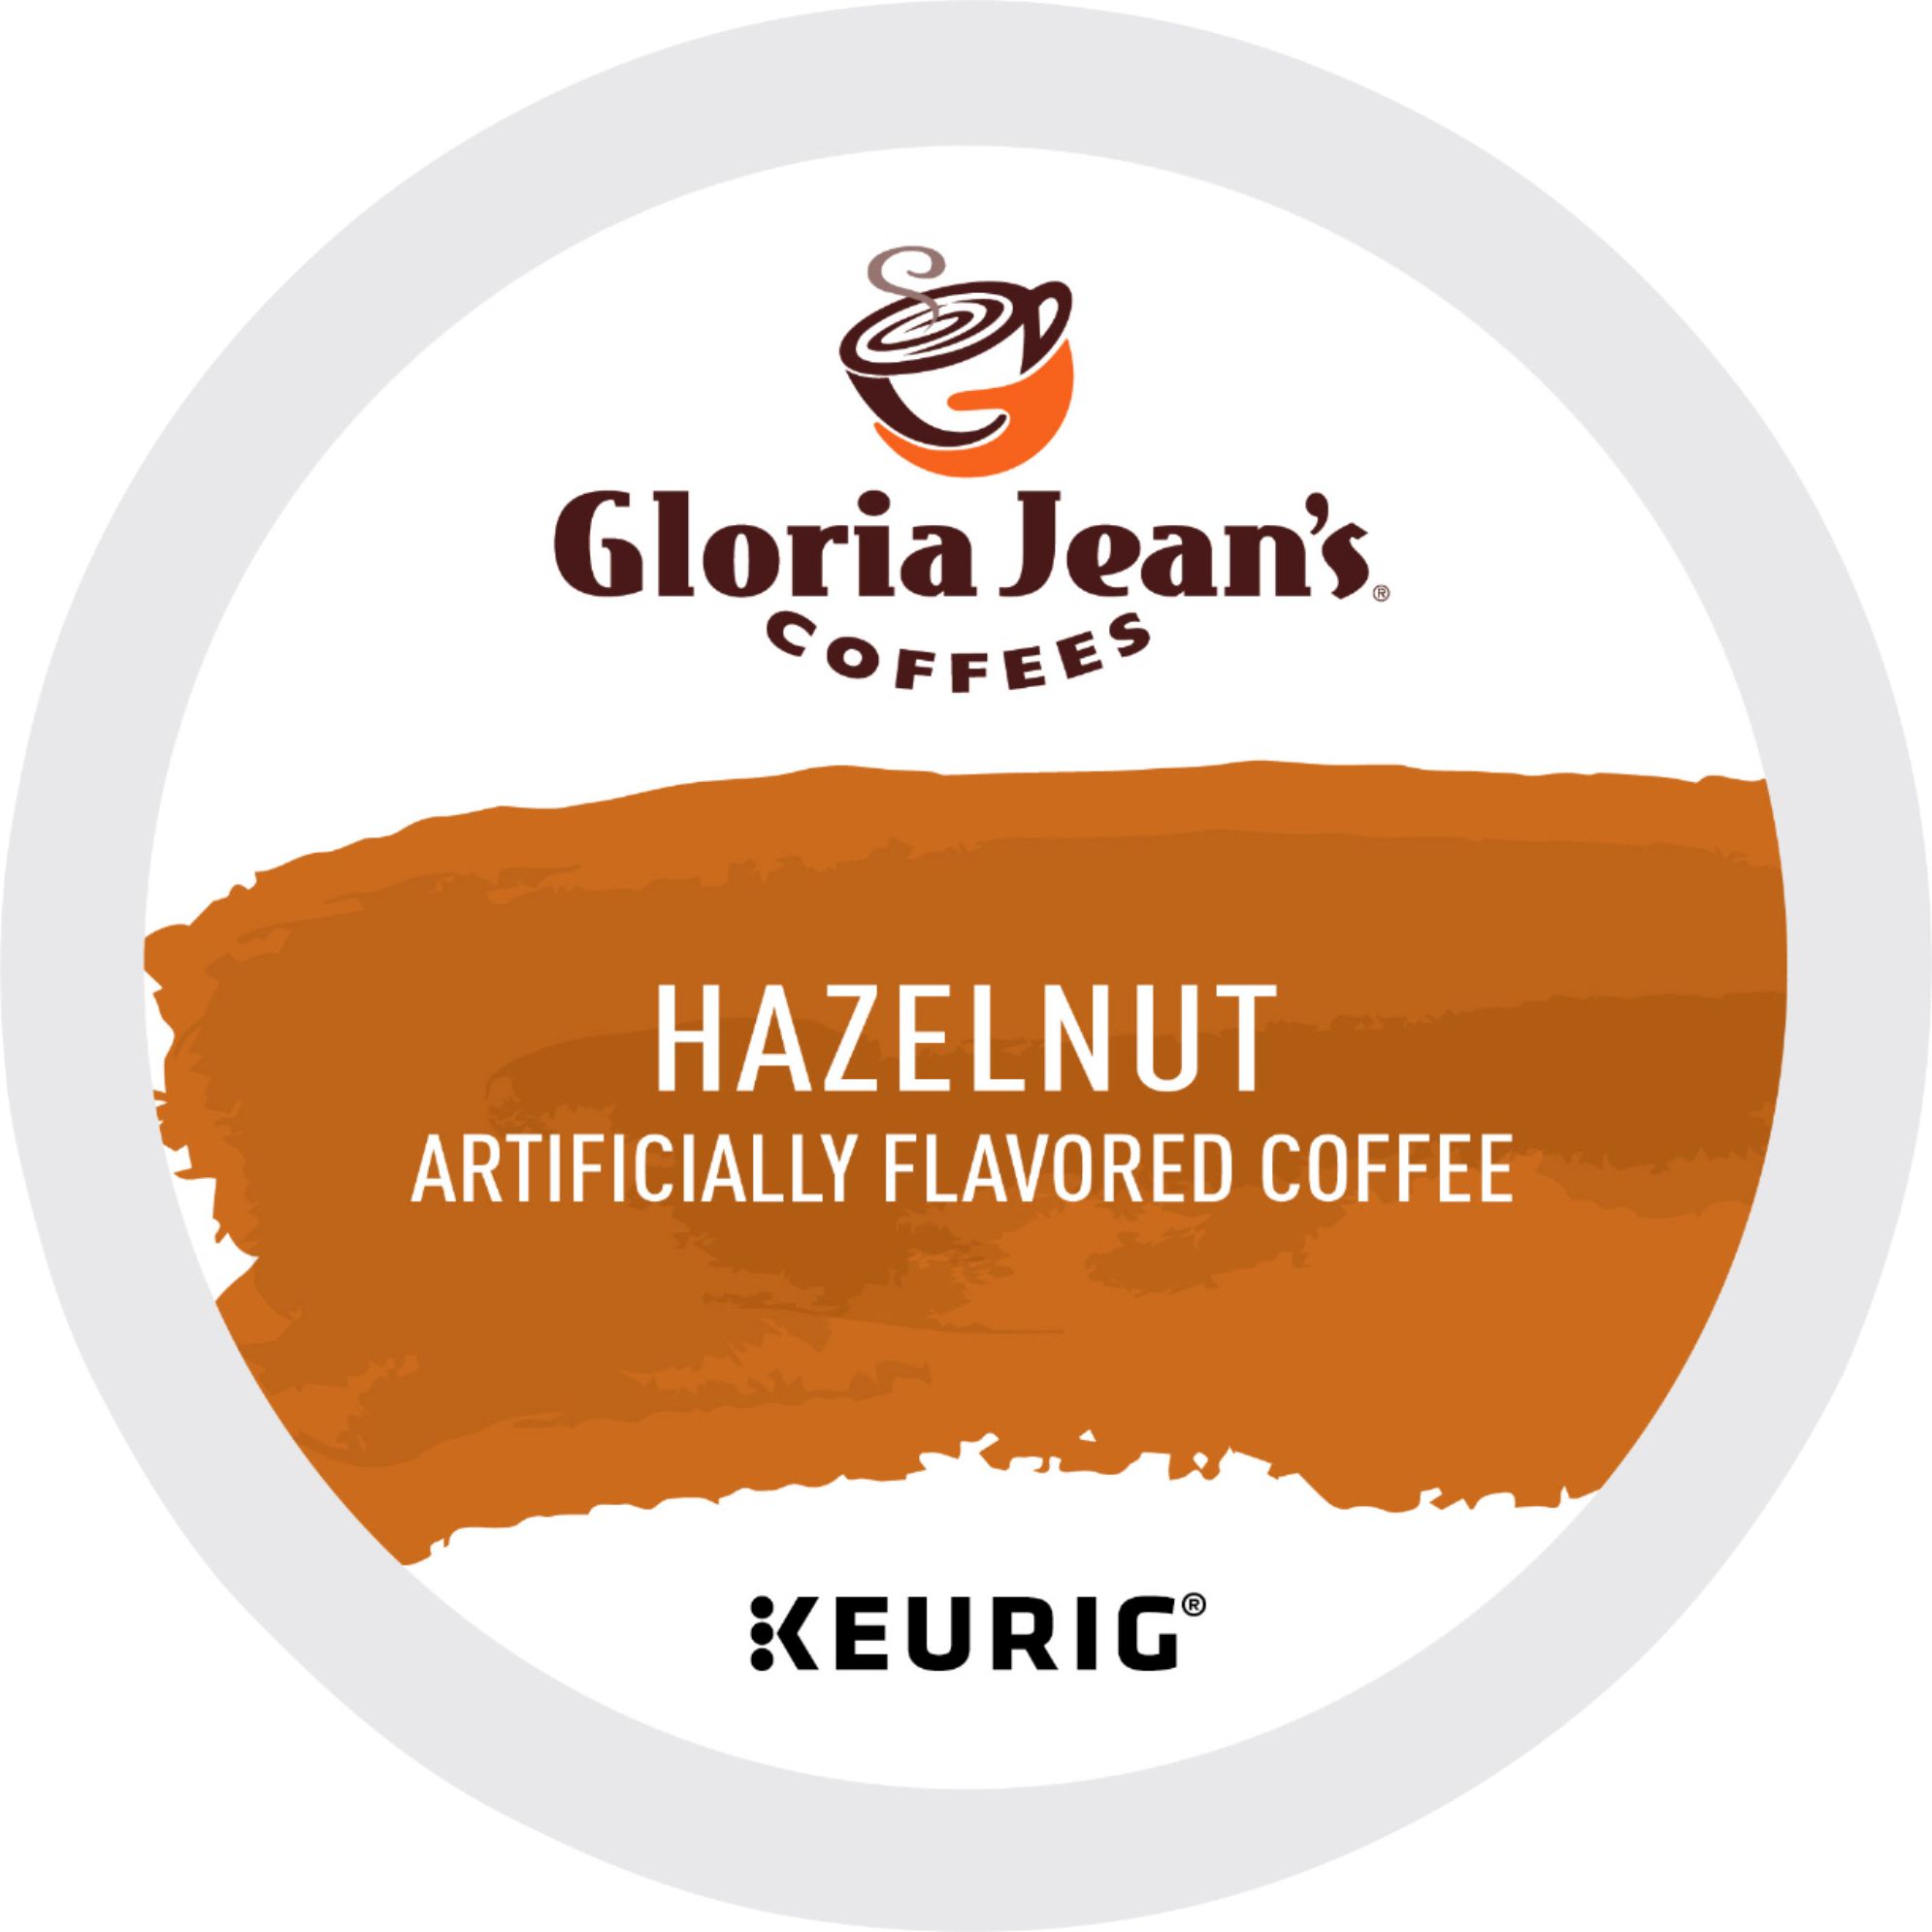 Gunny's Go Juice (K-Cup) – Always Faithful Coffee